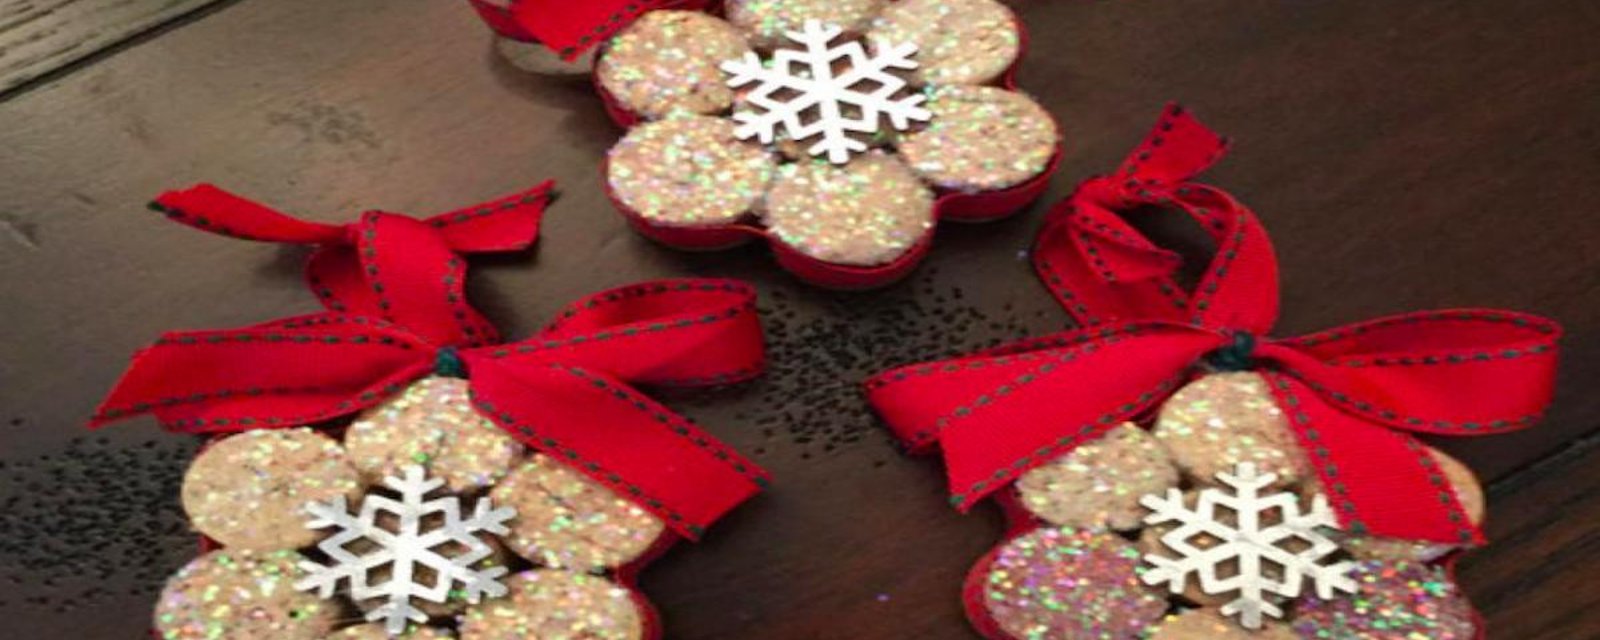 Récupérez les bouchons de liège pour faire de belles décorations de Noël!